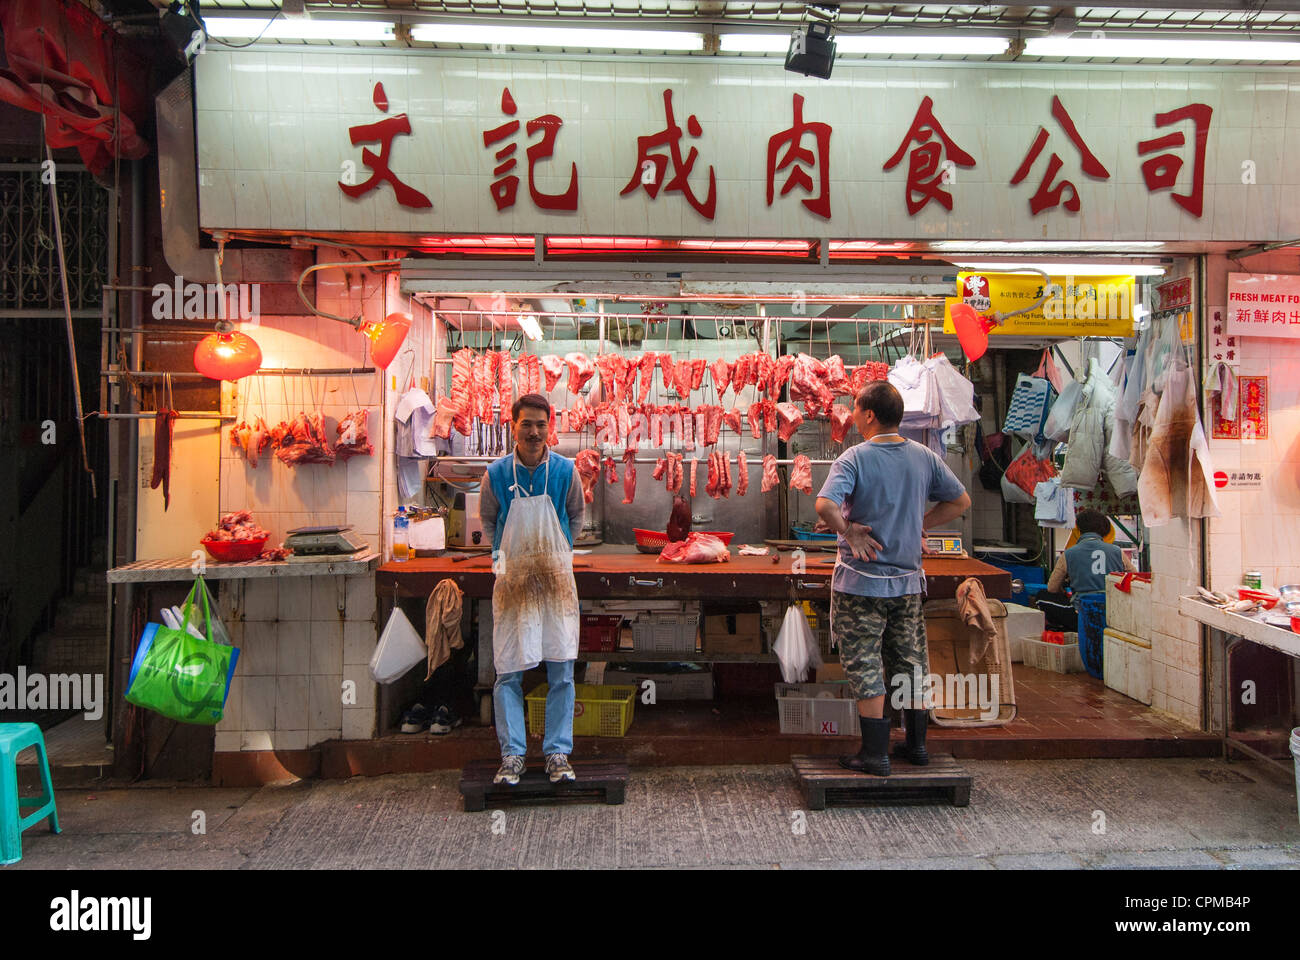 Butcher's shop. Central, Hong Kong, China. Stock Photo